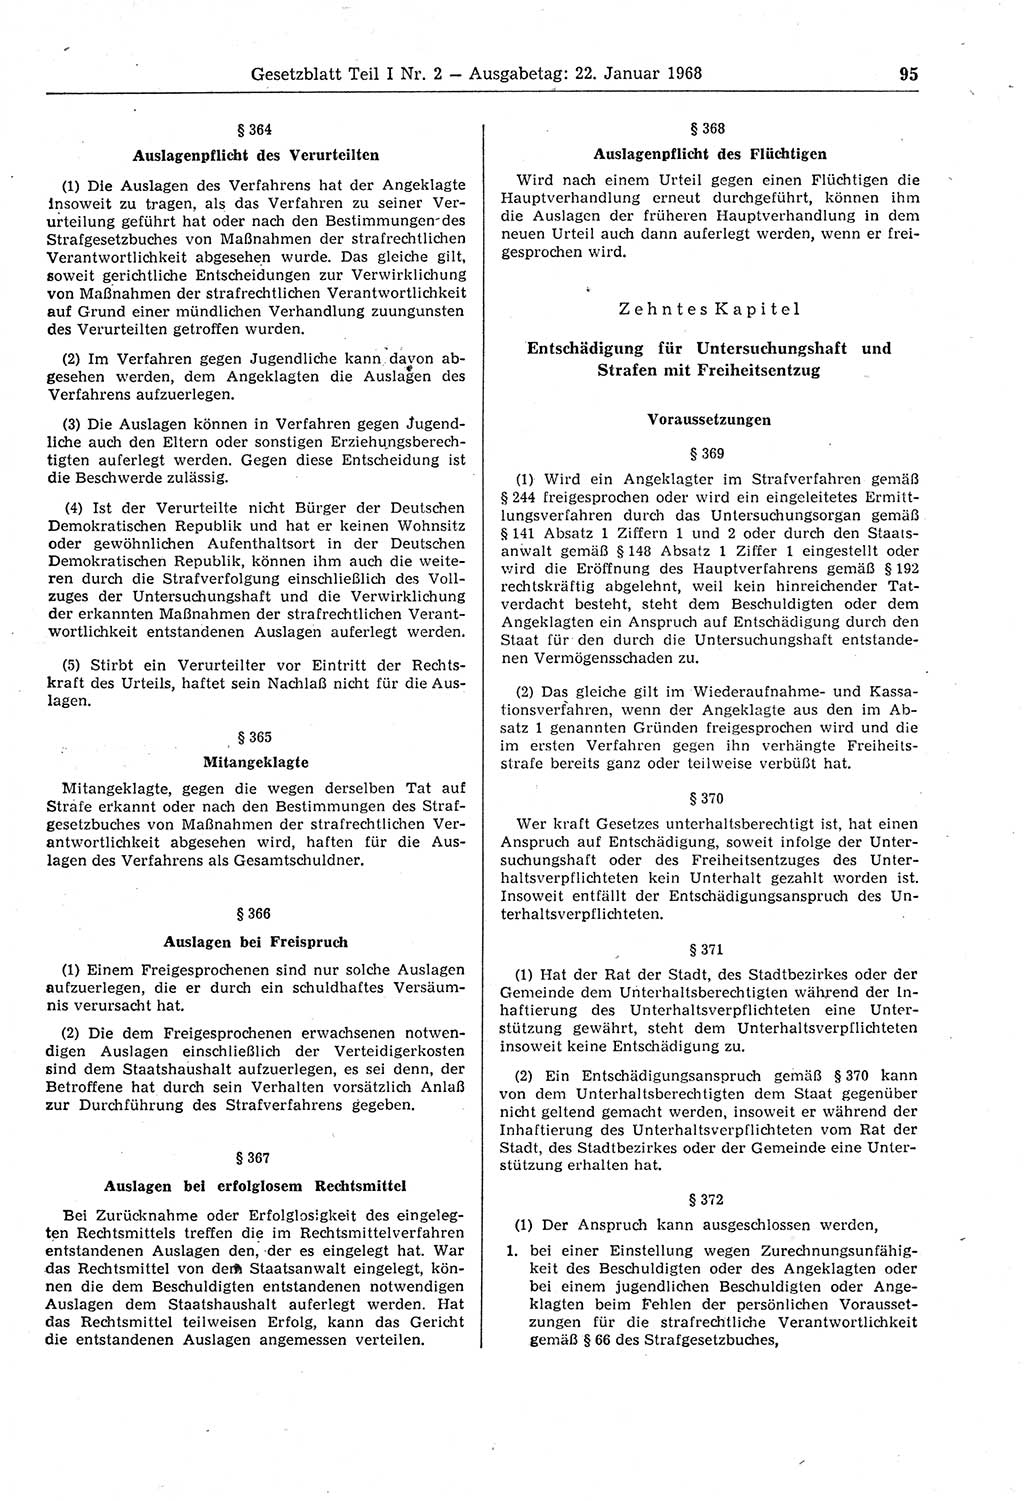 Gesetzblatt (GBl.) der Deutschen Demokratischen Republik (DDR) Teil Ⅰ 1968, Seite 95 (GBl. DDR Ⅰ 1968, S. 95)